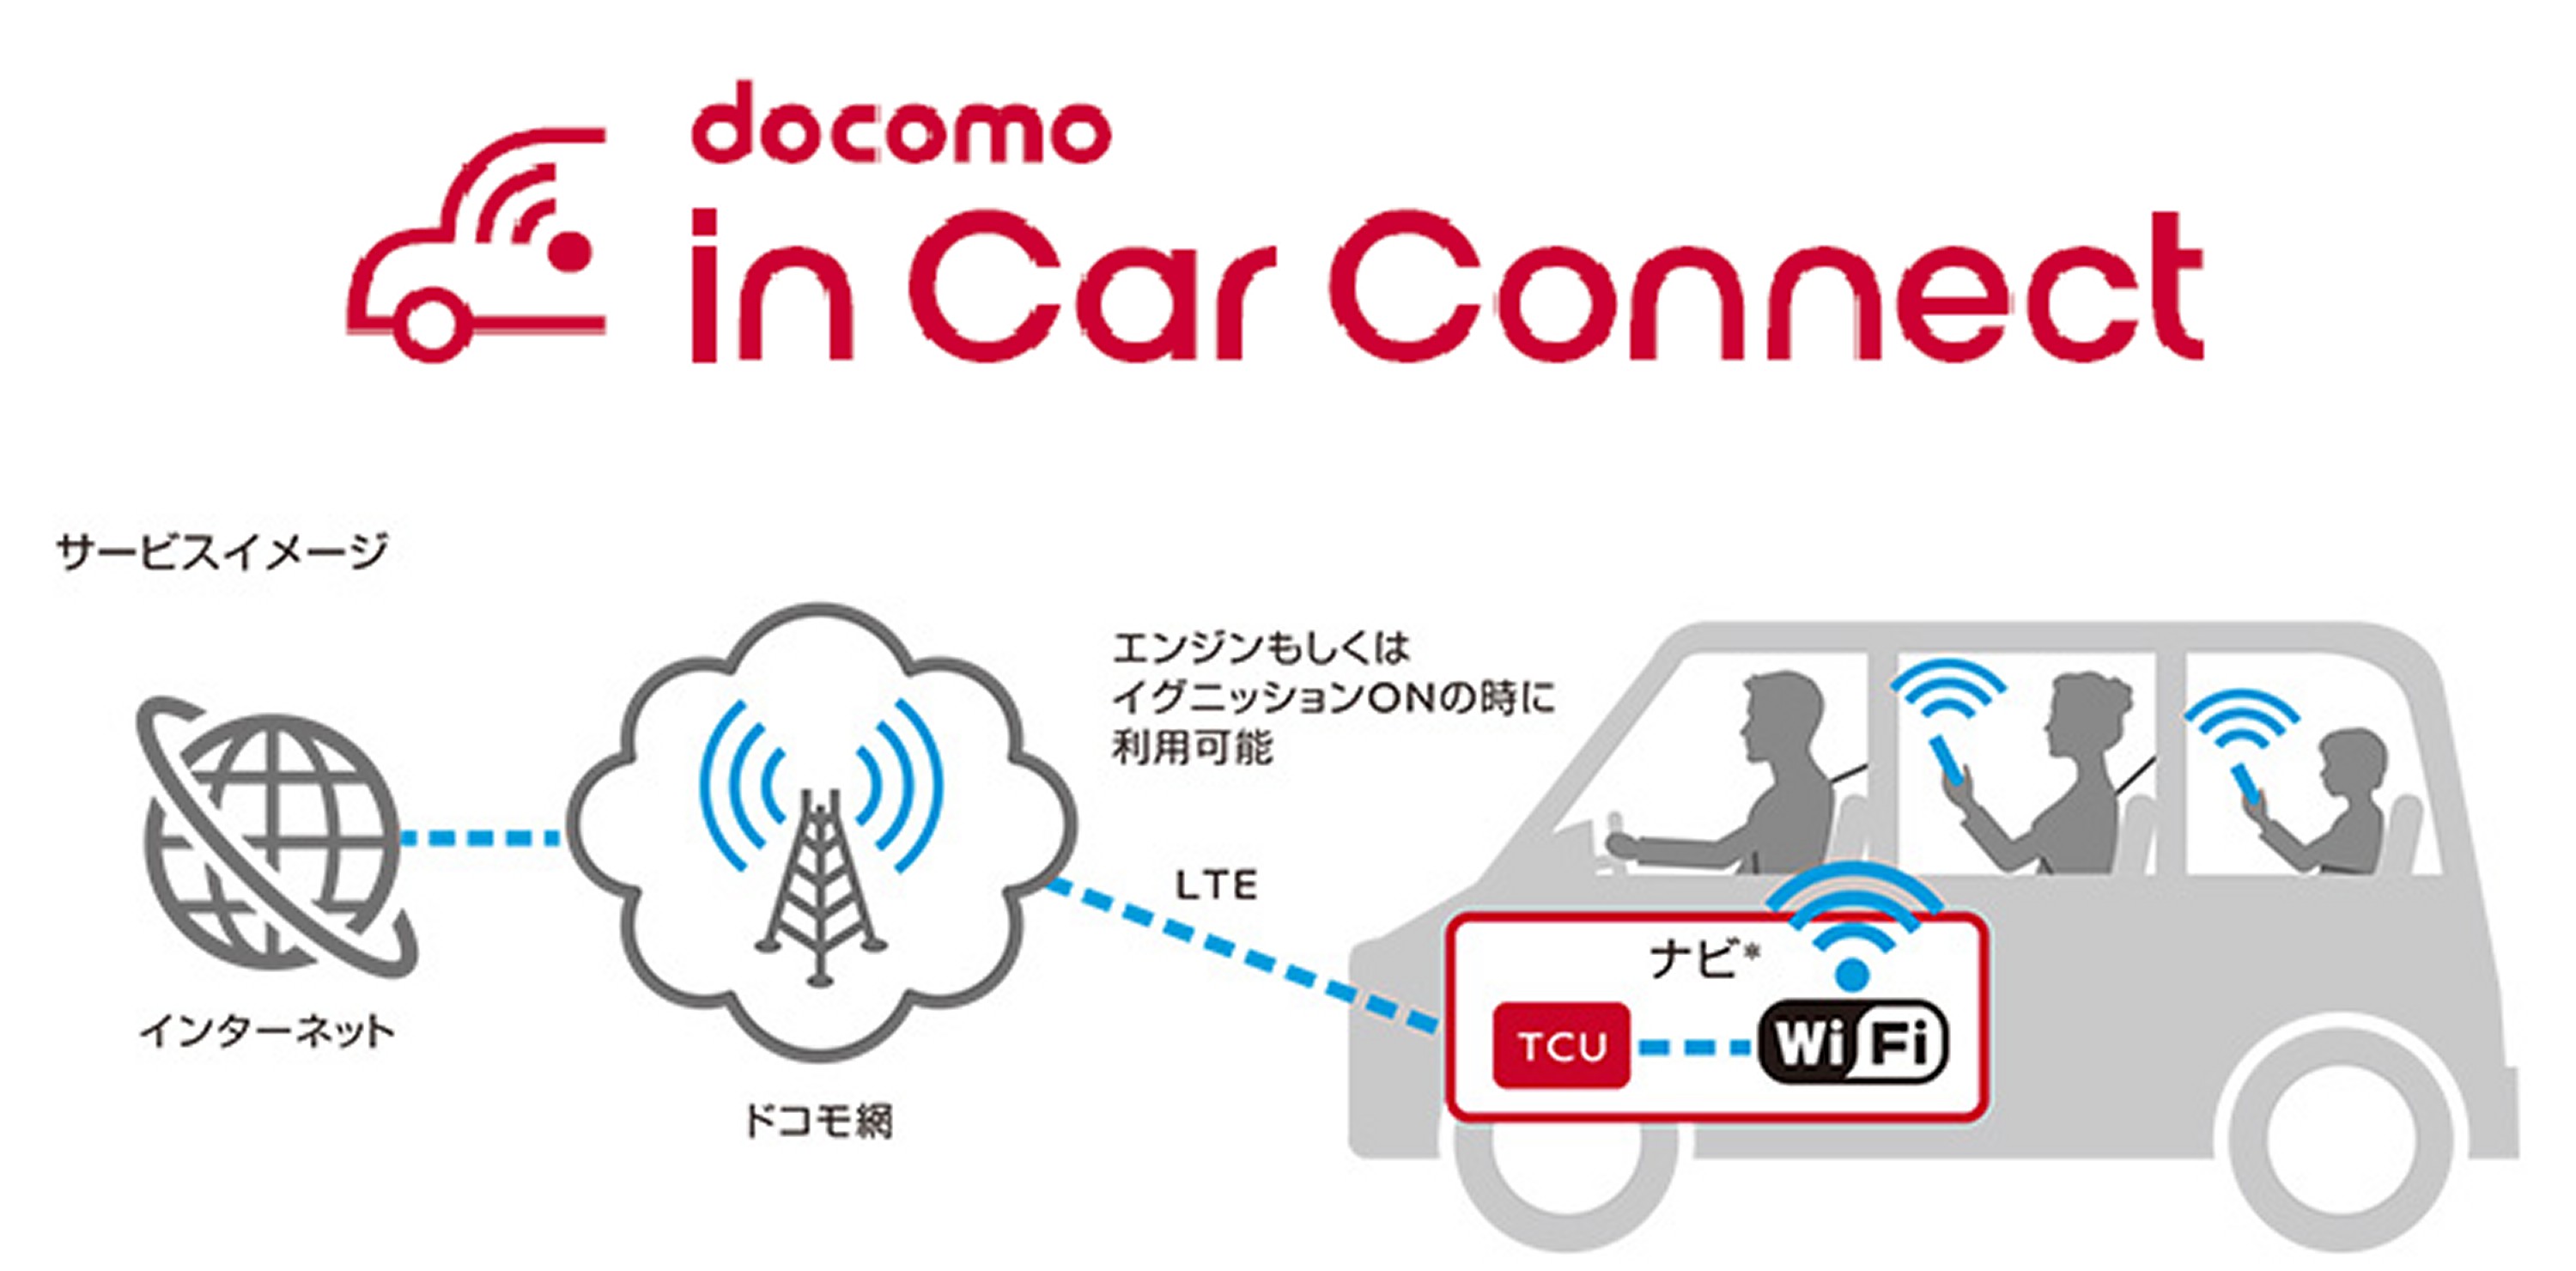 自動車内でドコモの4G LTEが使い放題！「docomo in Car Connect」1